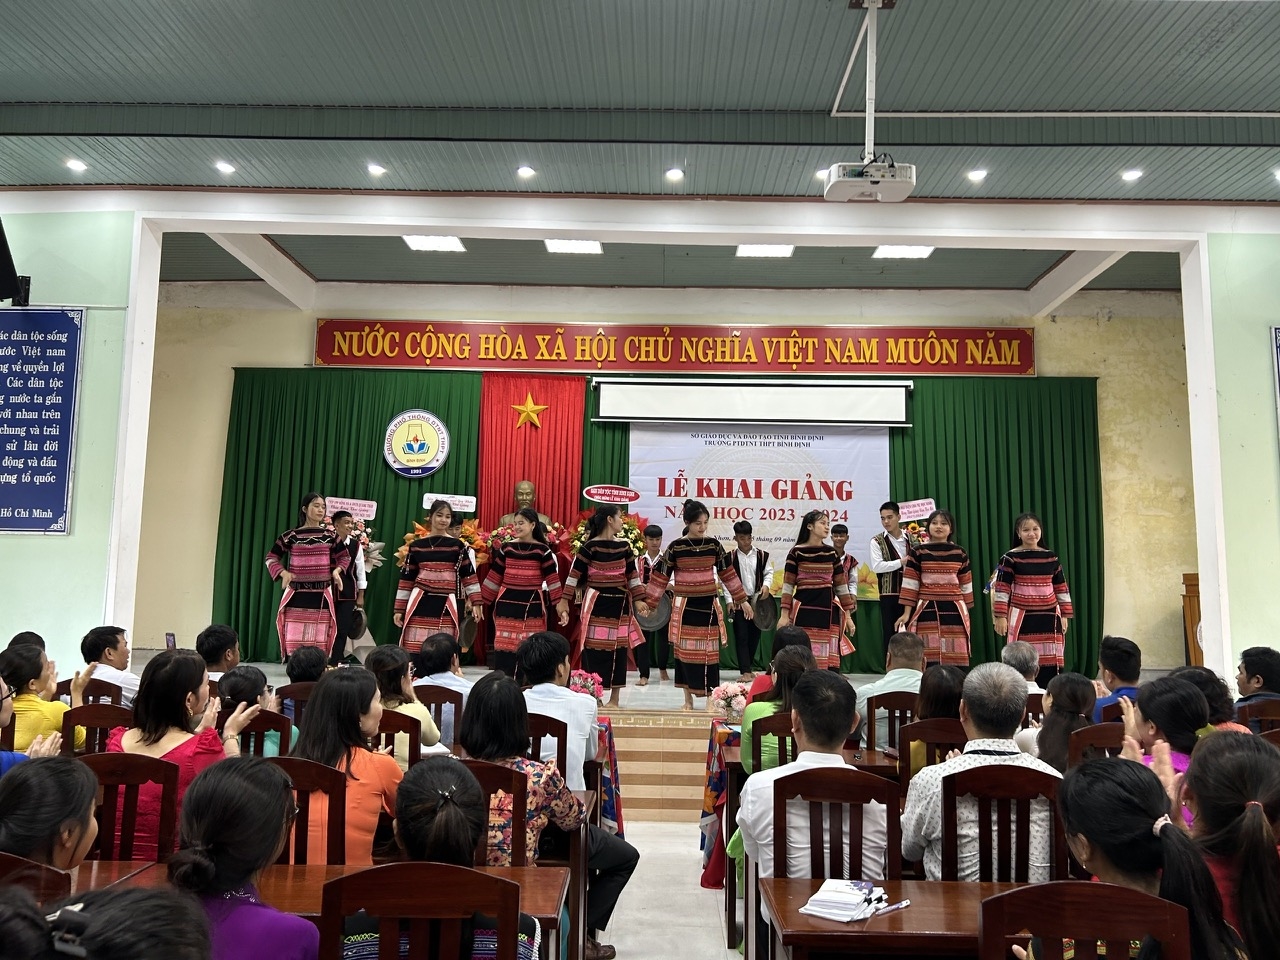 Học sinh Trường PT DTNT tỉnh Bình Định biểu diễn tiết mục văn nghệ truyền thống tại lễ khai giảng